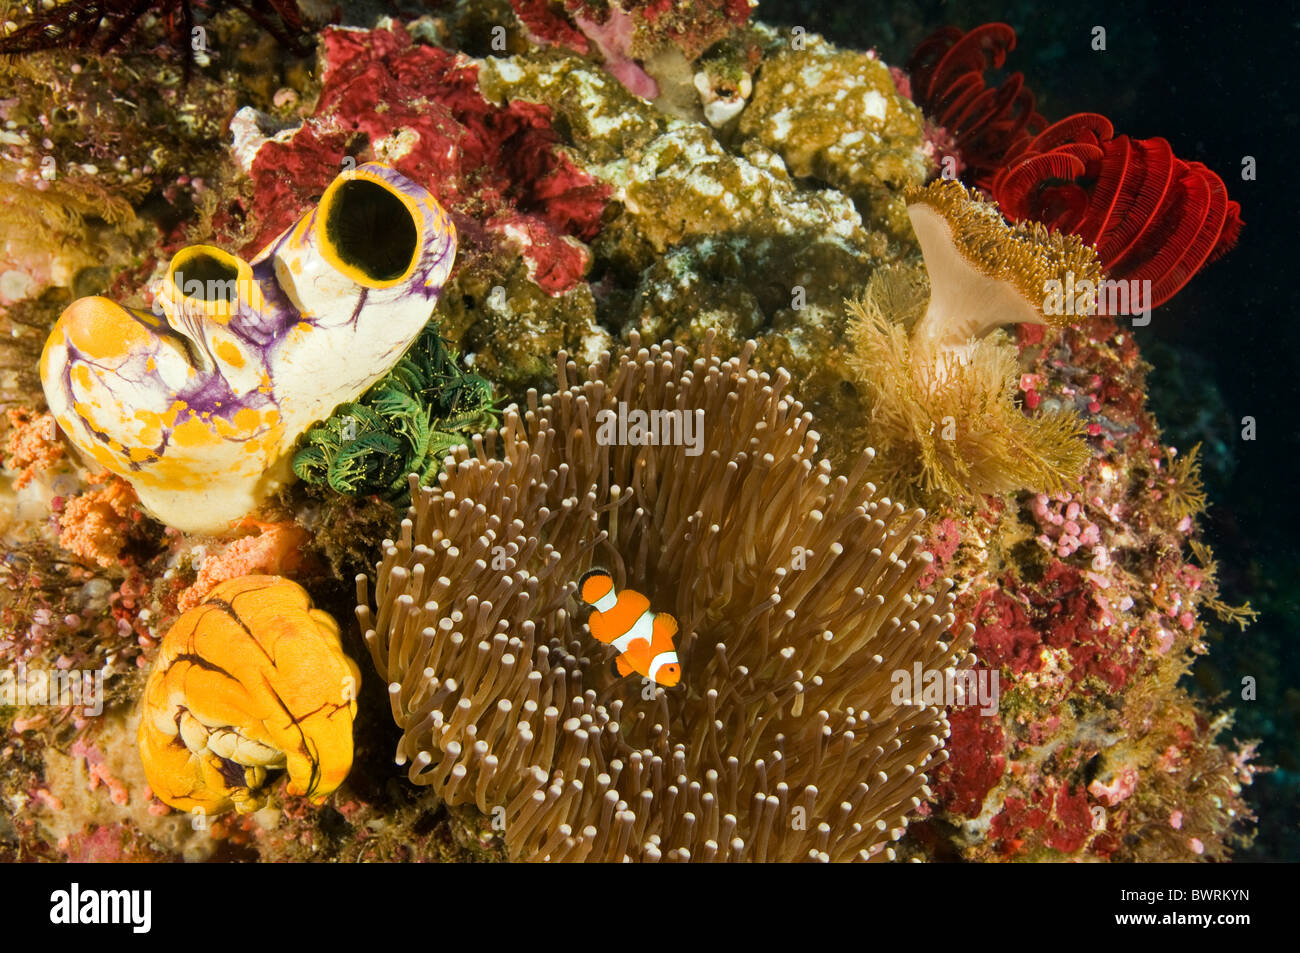 Scenic con arrecife, el pez payaso Amphiprion ocellaris, Raja Ampat Indonesia Foto de stock